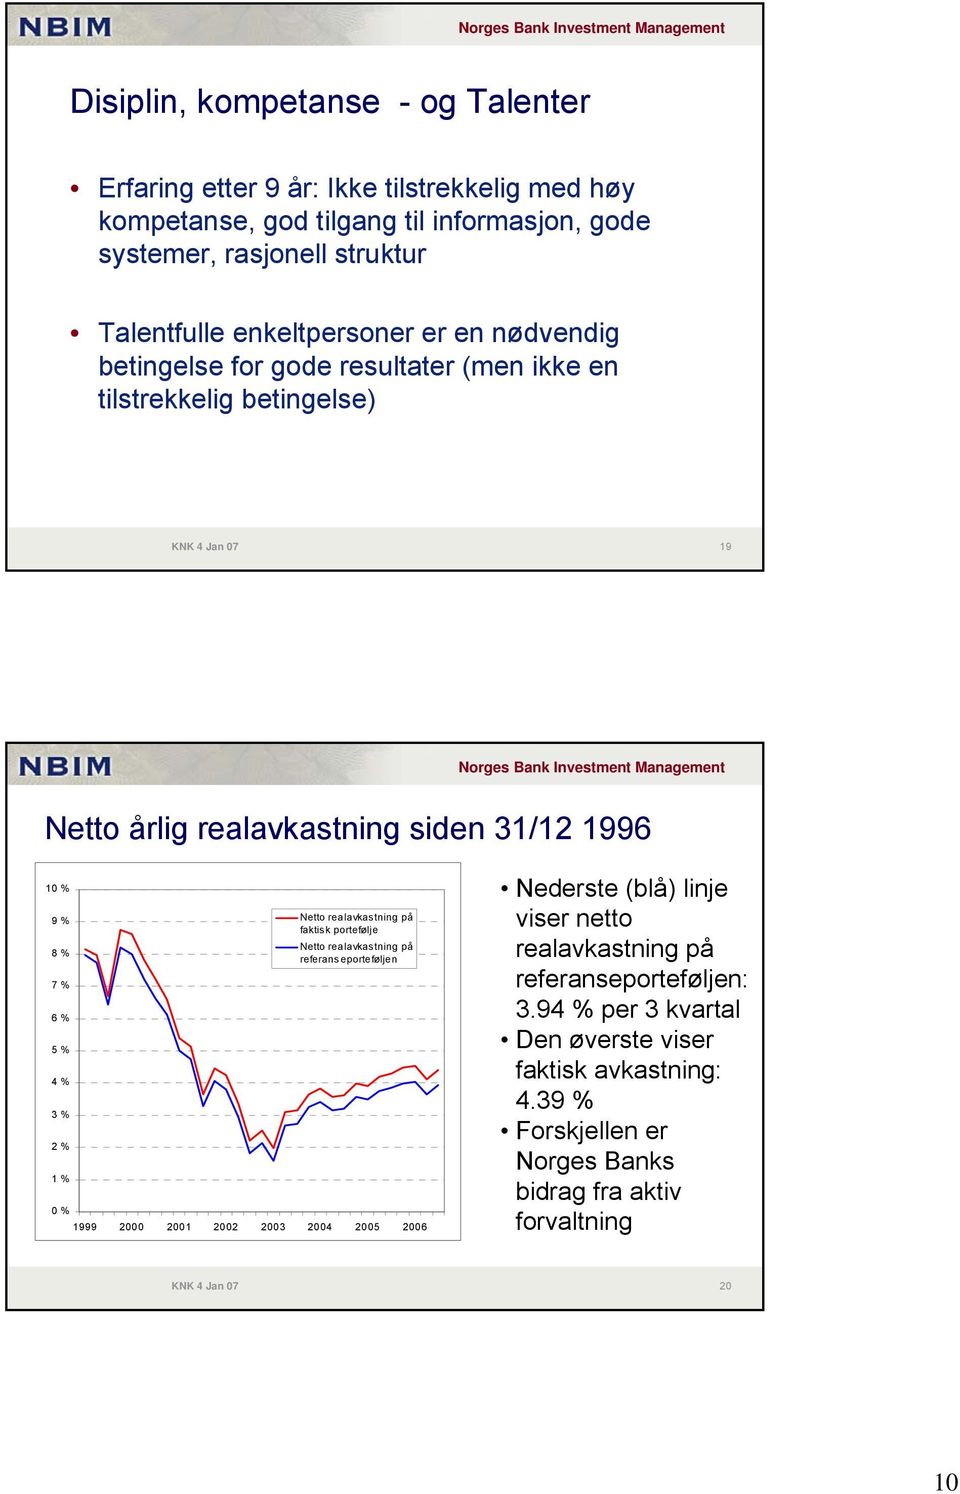 % 5 % 4 % 3 % 2 % 1 % 0 % Netto realavkastning på faktisk portefølje Netto realavkastning på referanseporteføljen 1999 2000 2001 2002 2003 2004 2005 2006 Nederste (blå) linje